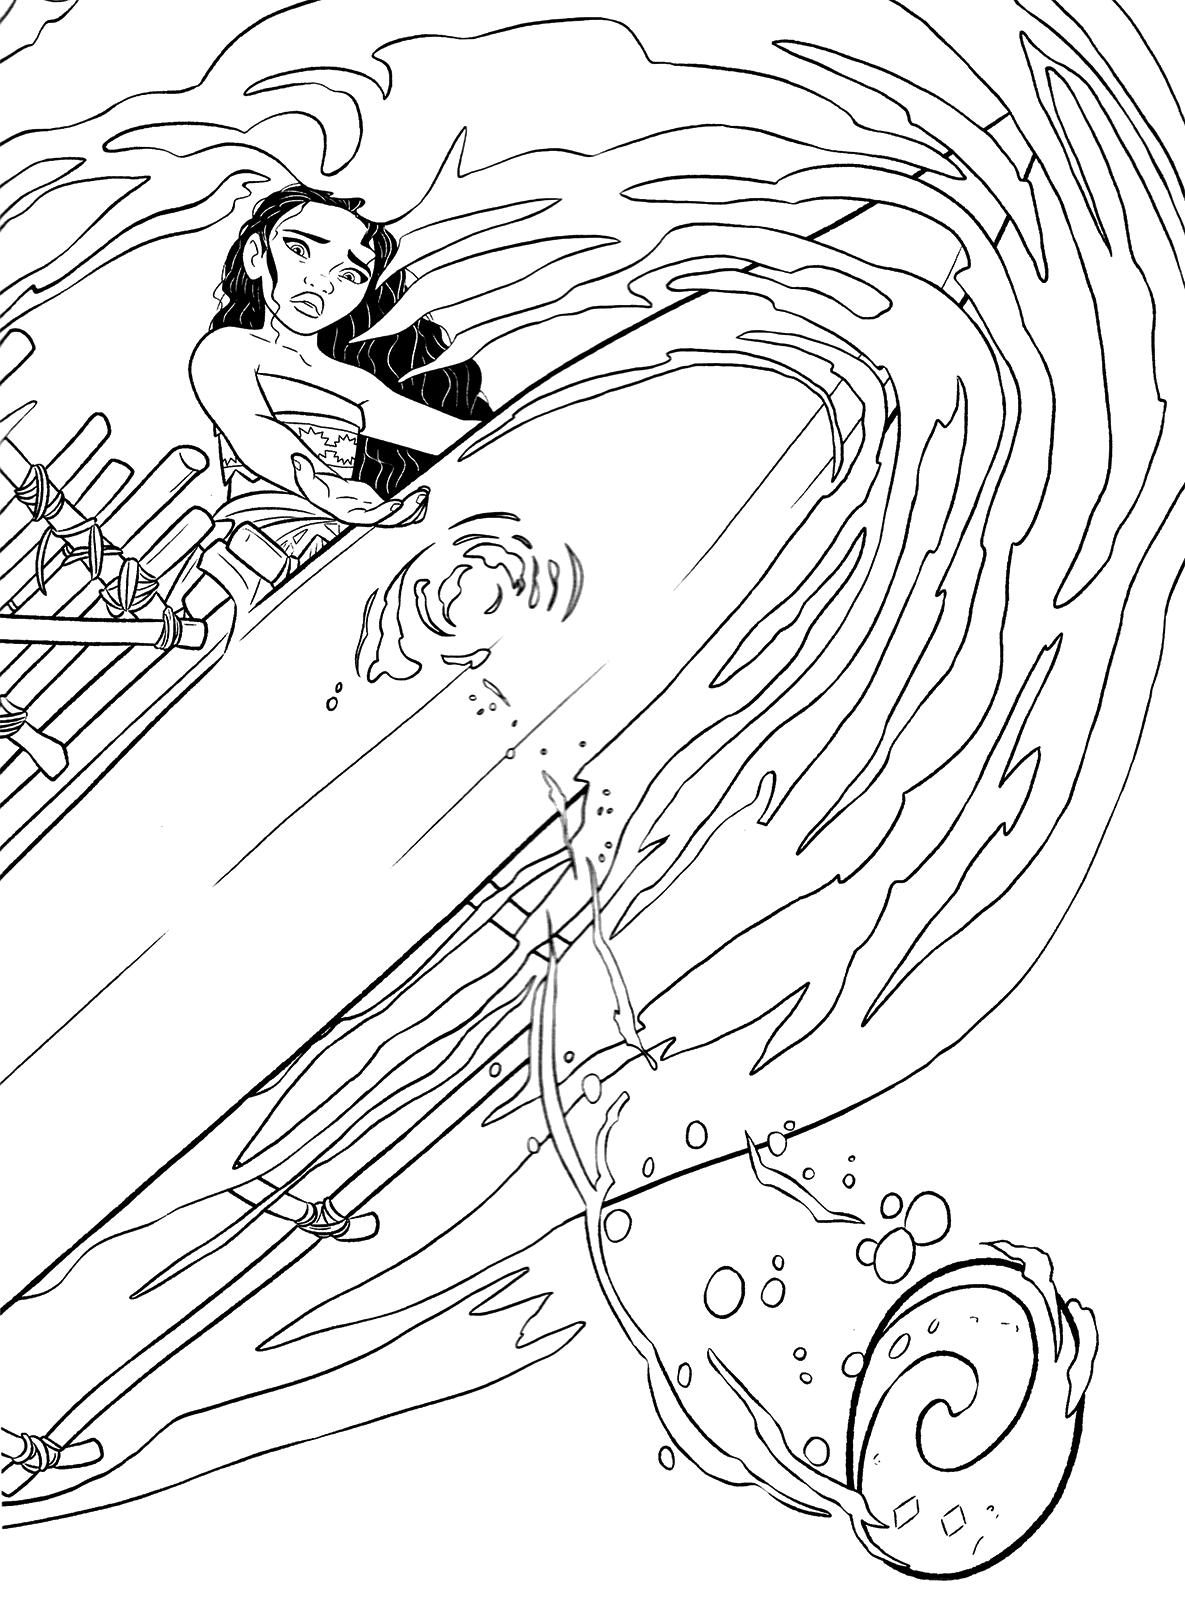 Раскраски к современному мультфильму Моана для детей  Раскраска принцесса Моана вид из под воды